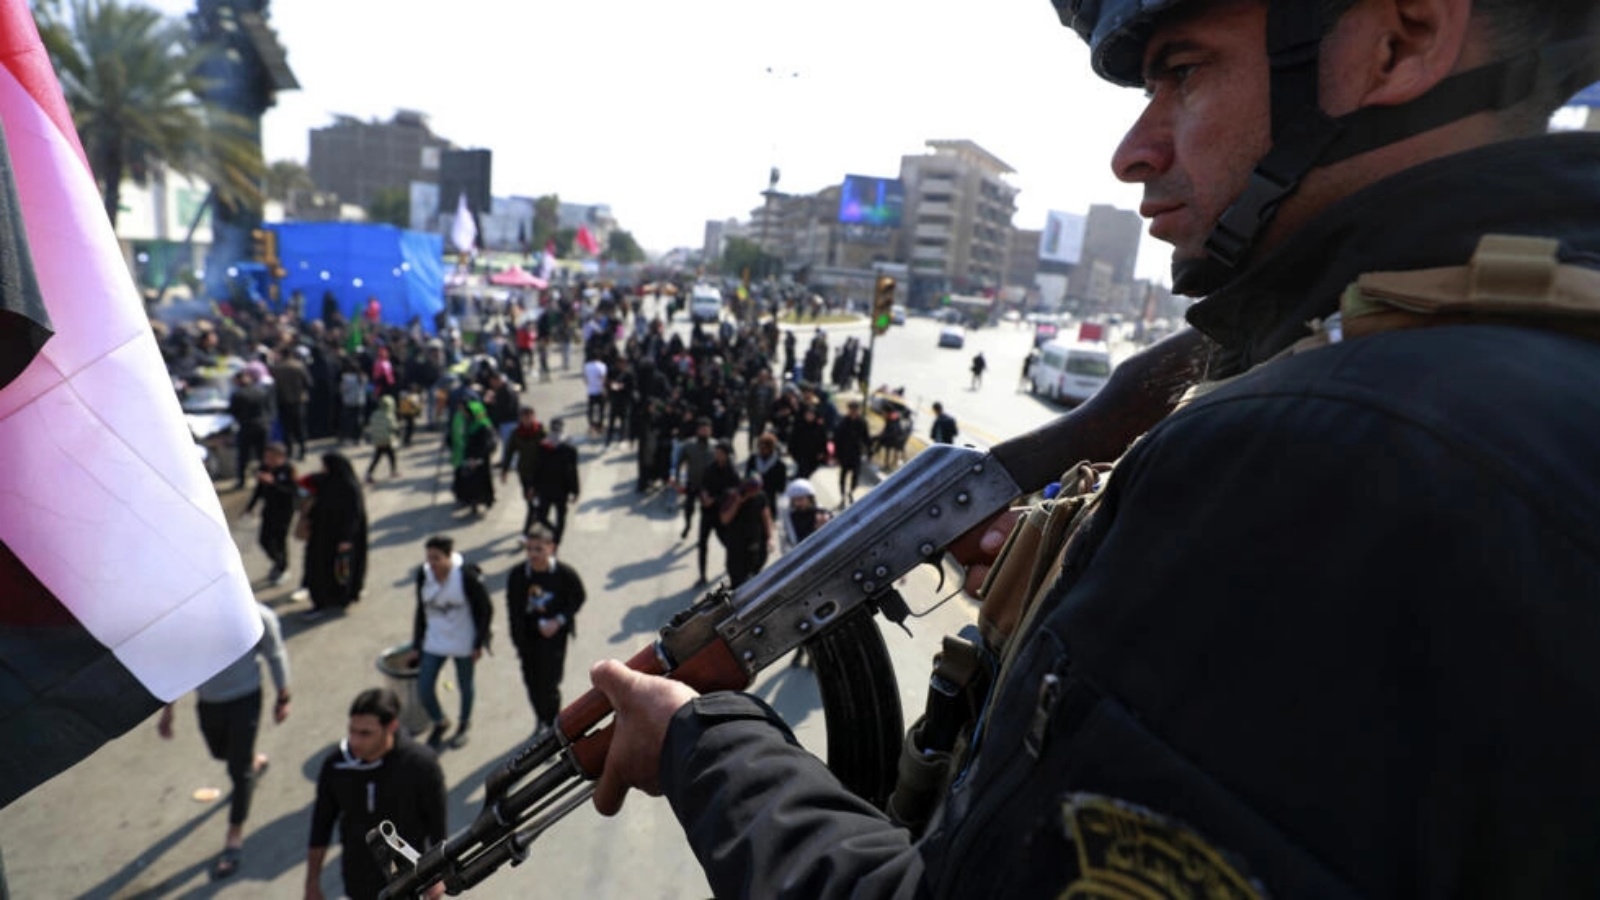 عنصر من القوات الأمنية يقوم بحراسة زوار متجهين إلى مرقد الإمام الكاظم في بغداد في 15 فبراير 2023 